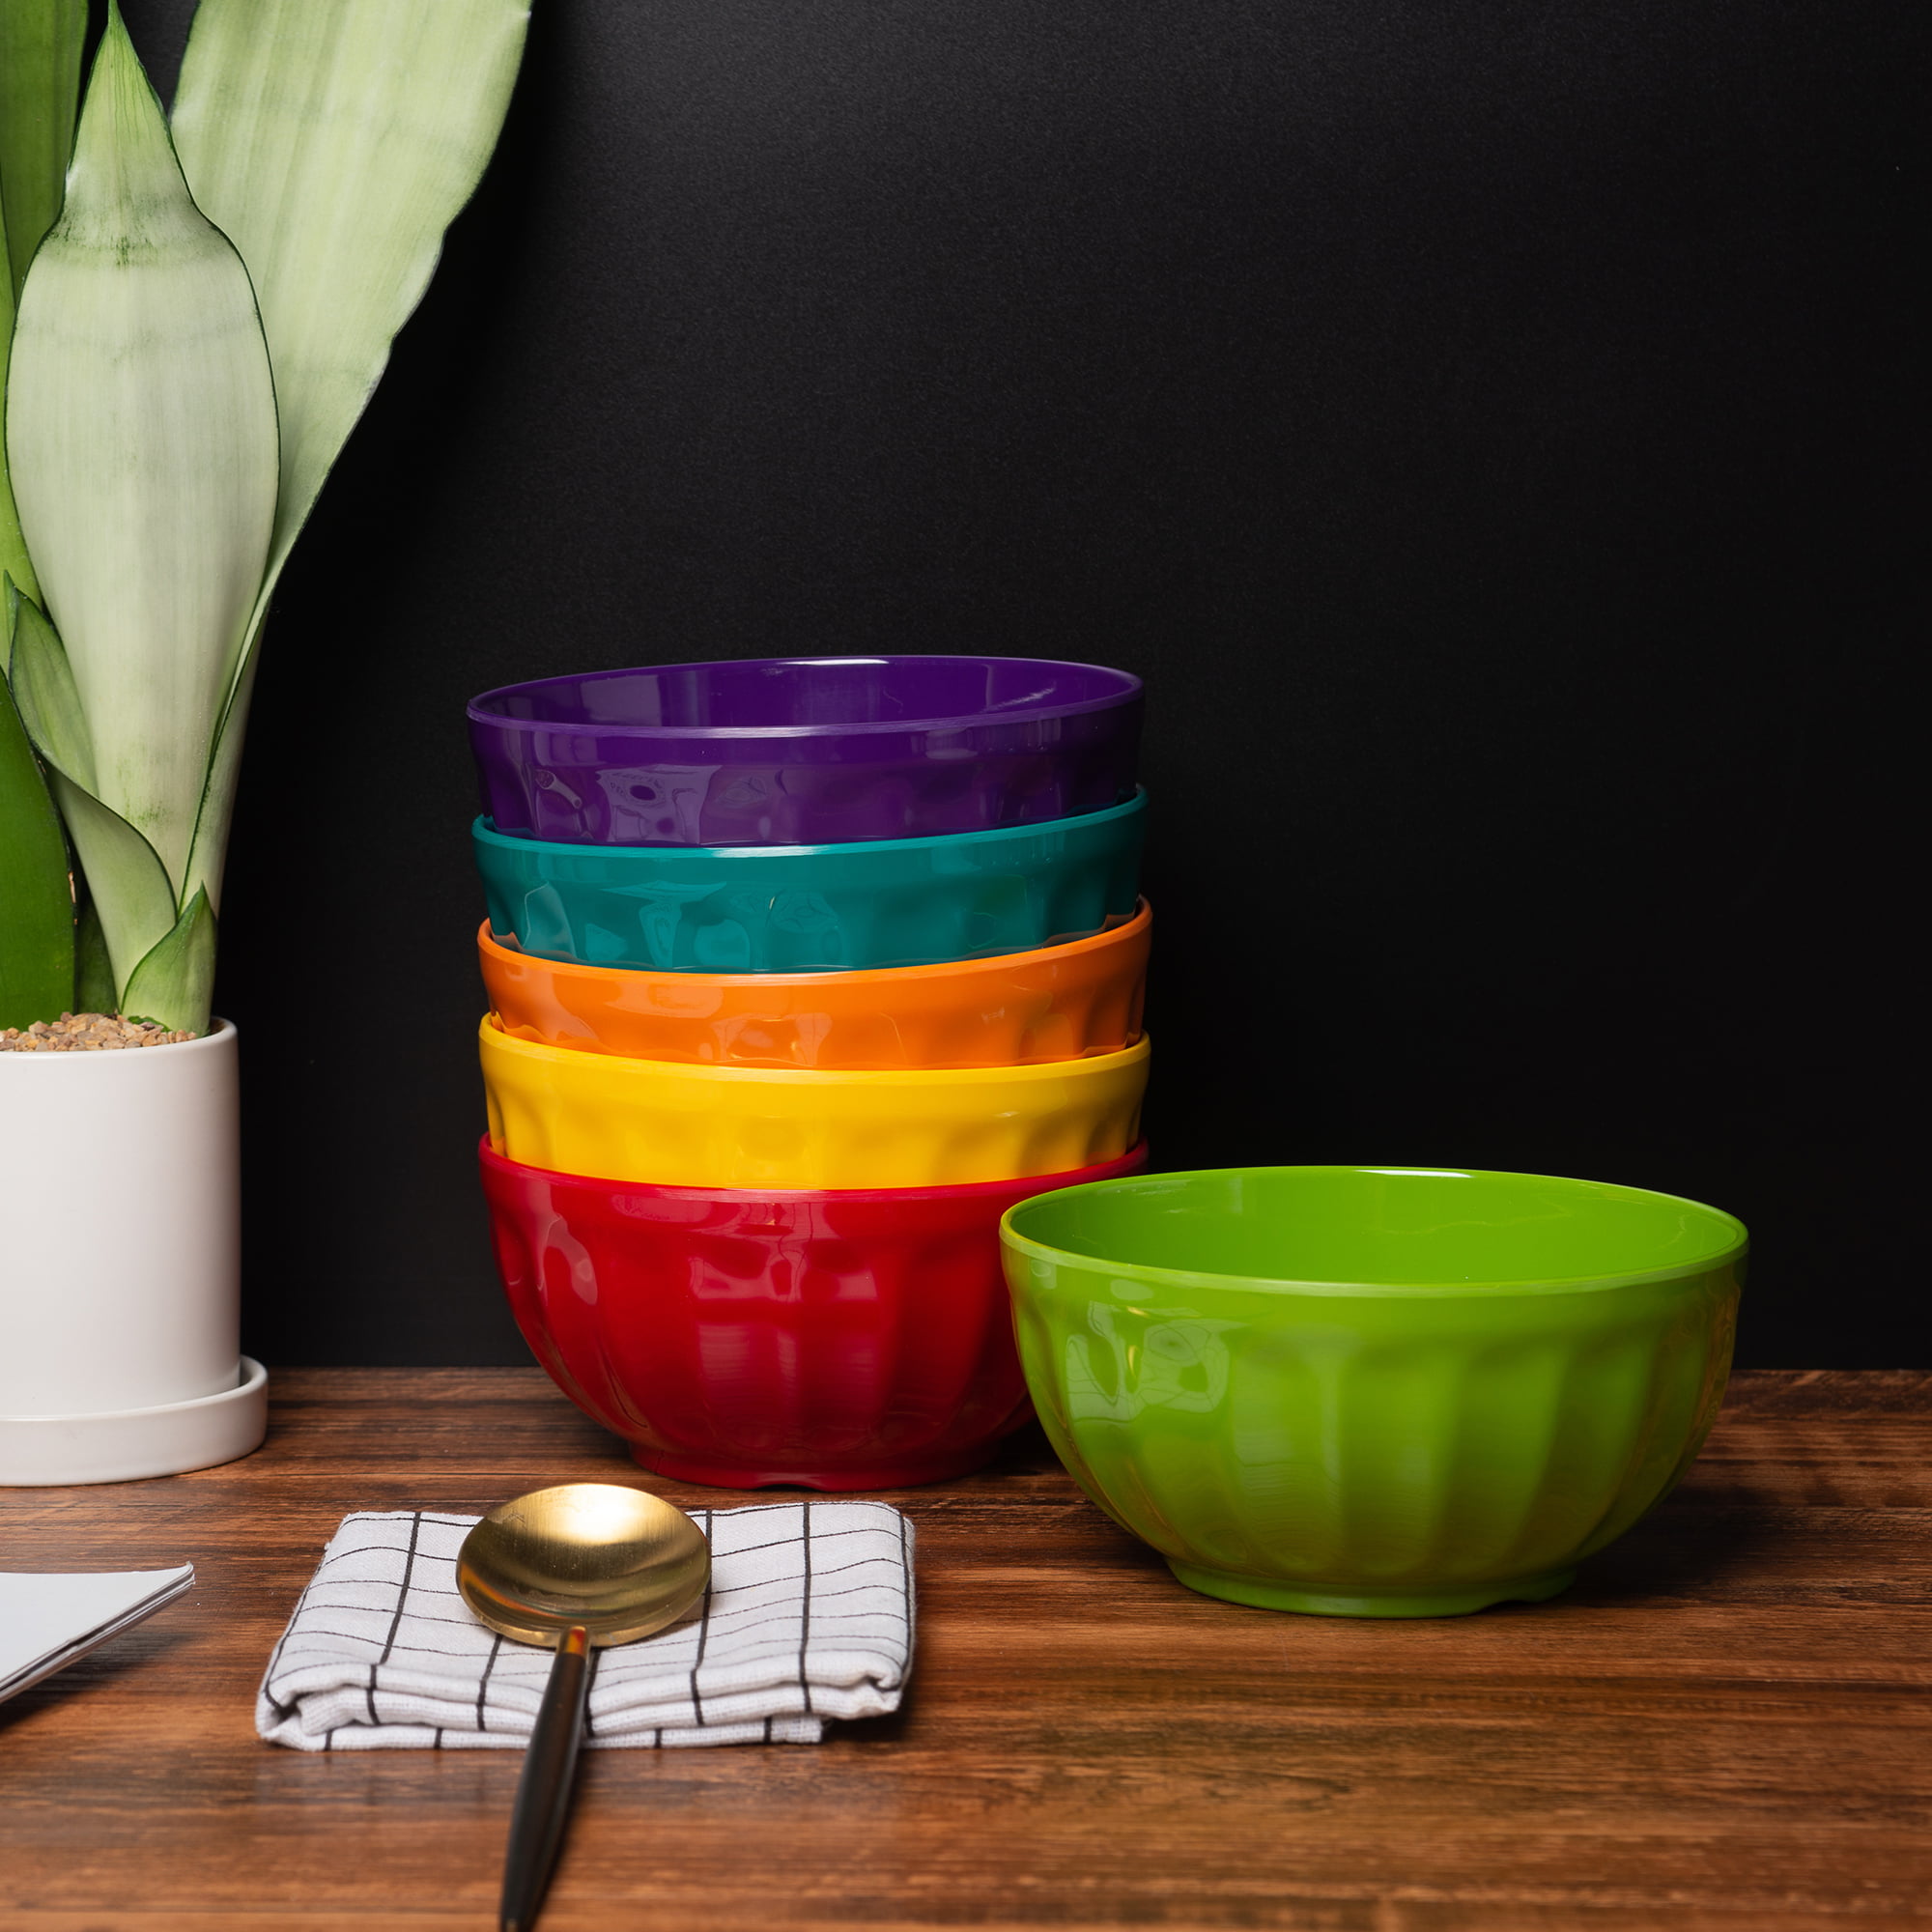 KX-WARE Melamine Snack Bowls with Lids - 28 oz6 inch 100% Melamine  cerealSalad Bowls set of 6 Multicolor